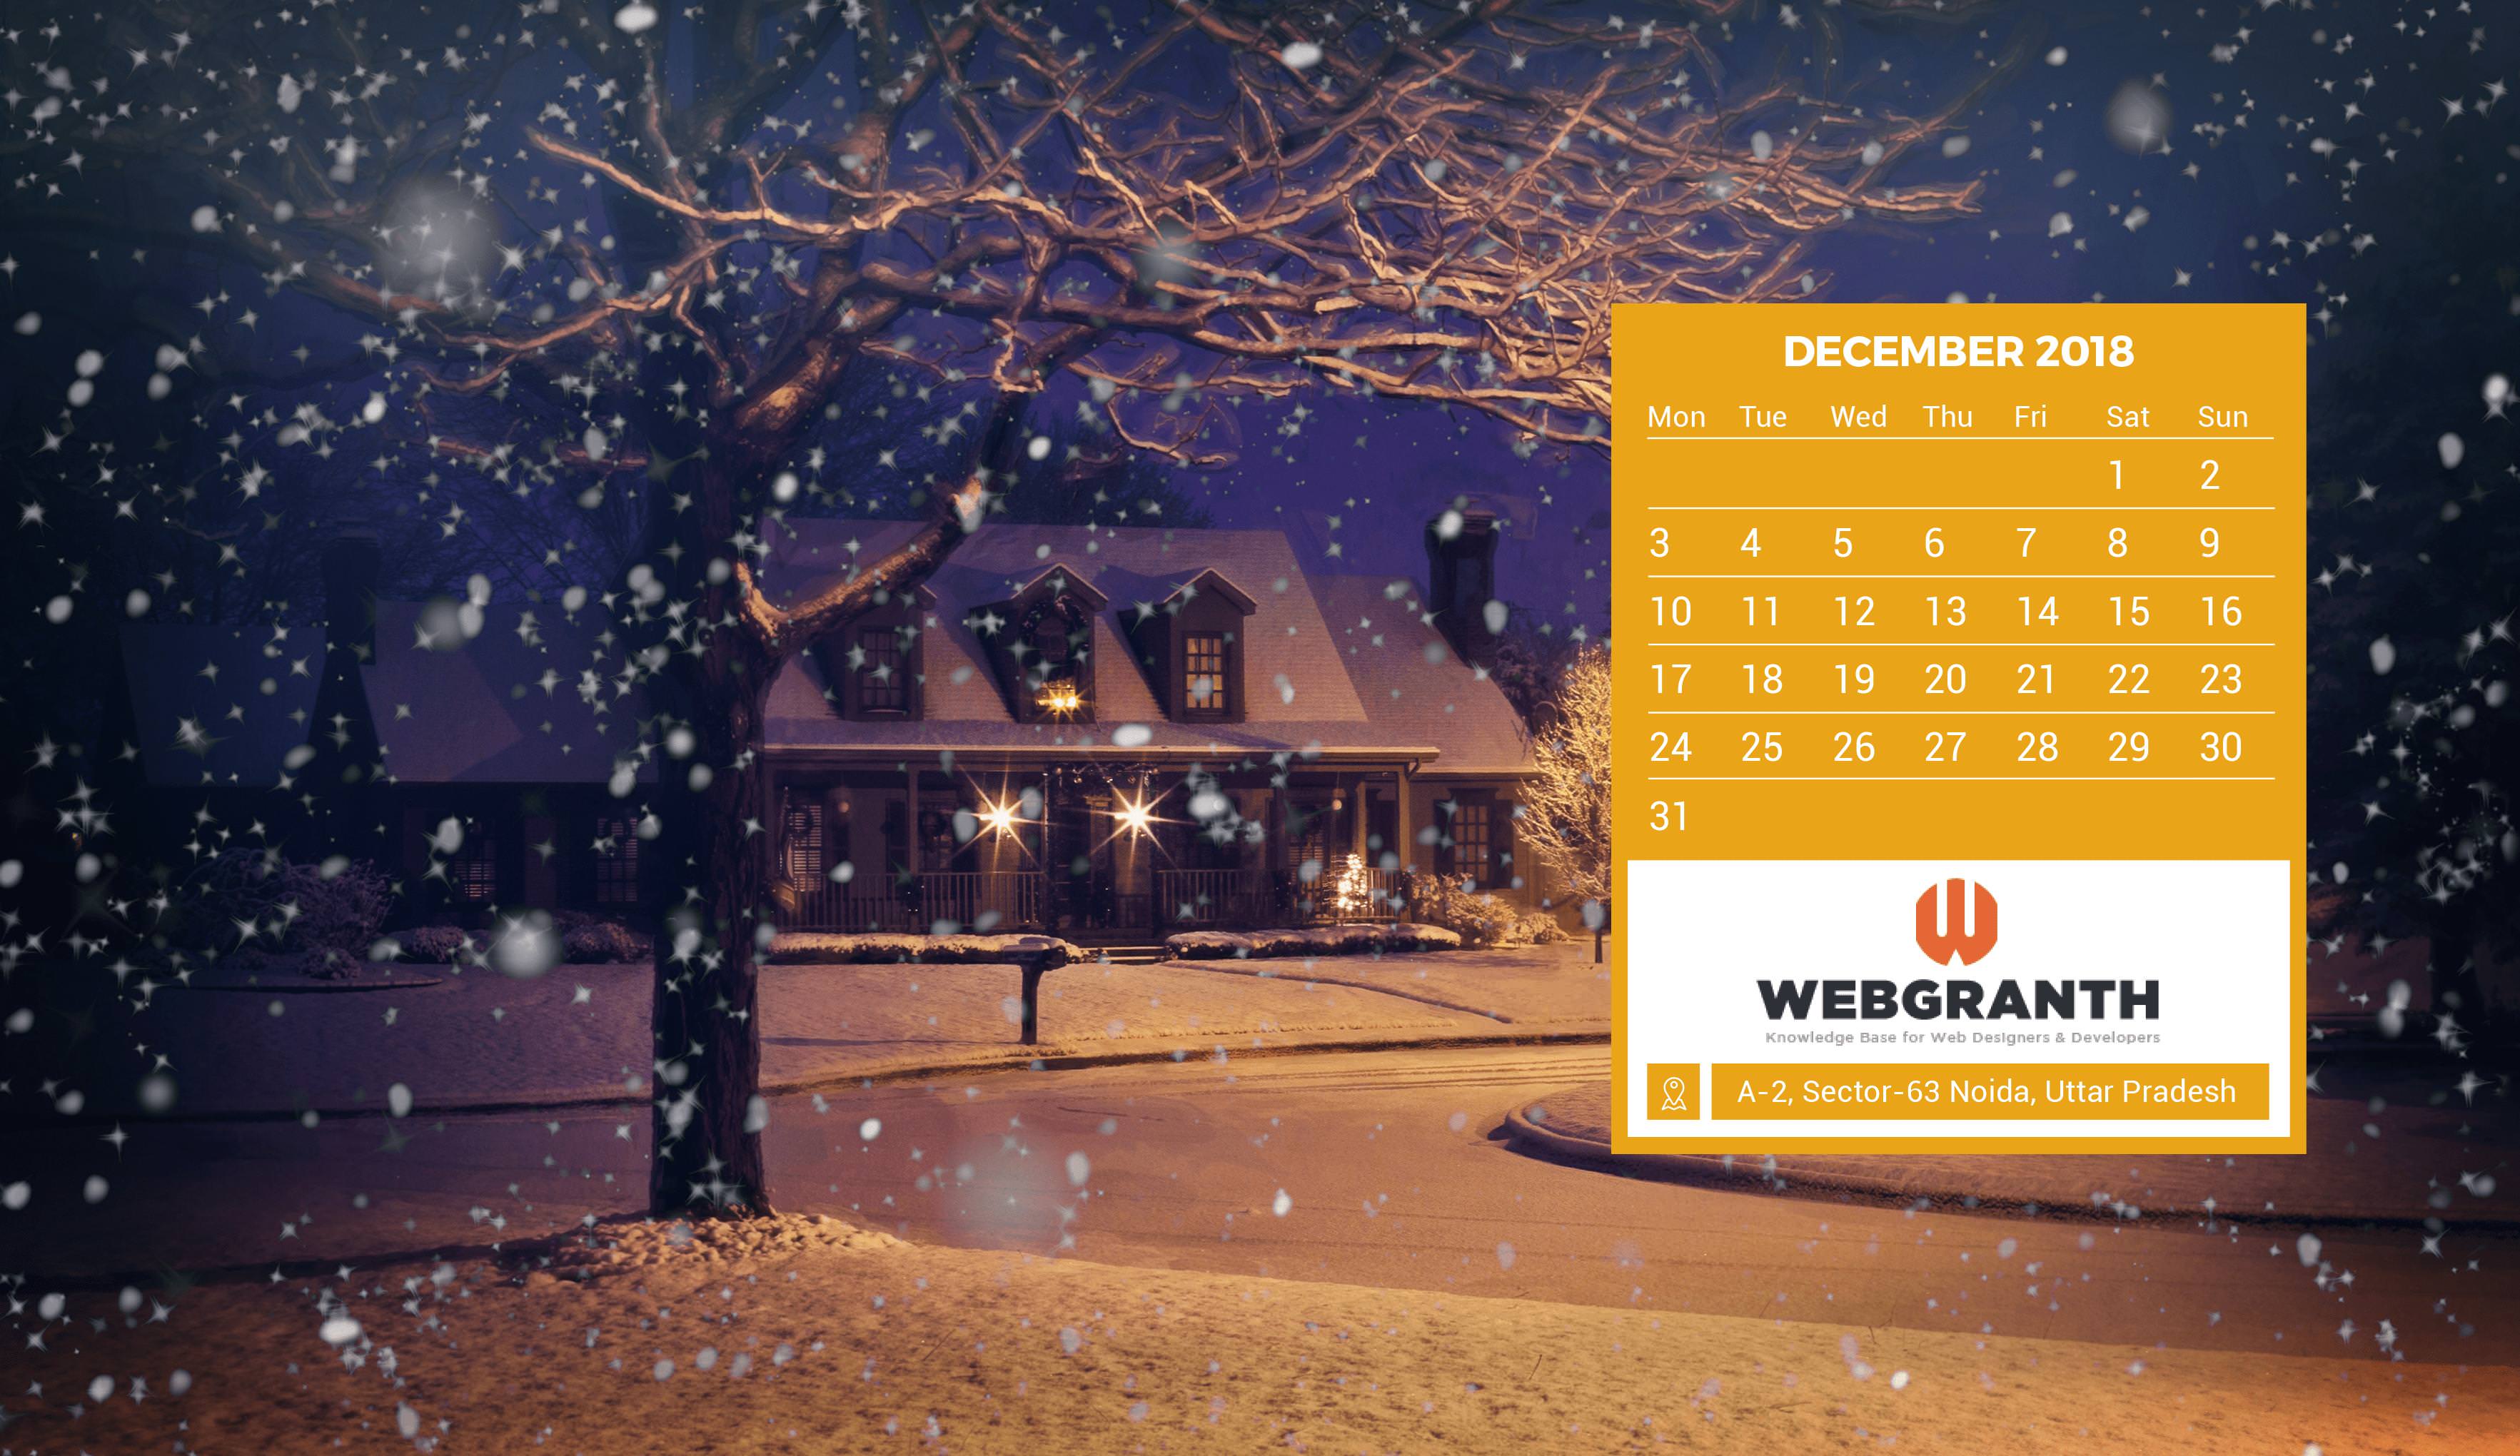 HD December 2018 Calendar Wallpaper: View HD Image Of HD December